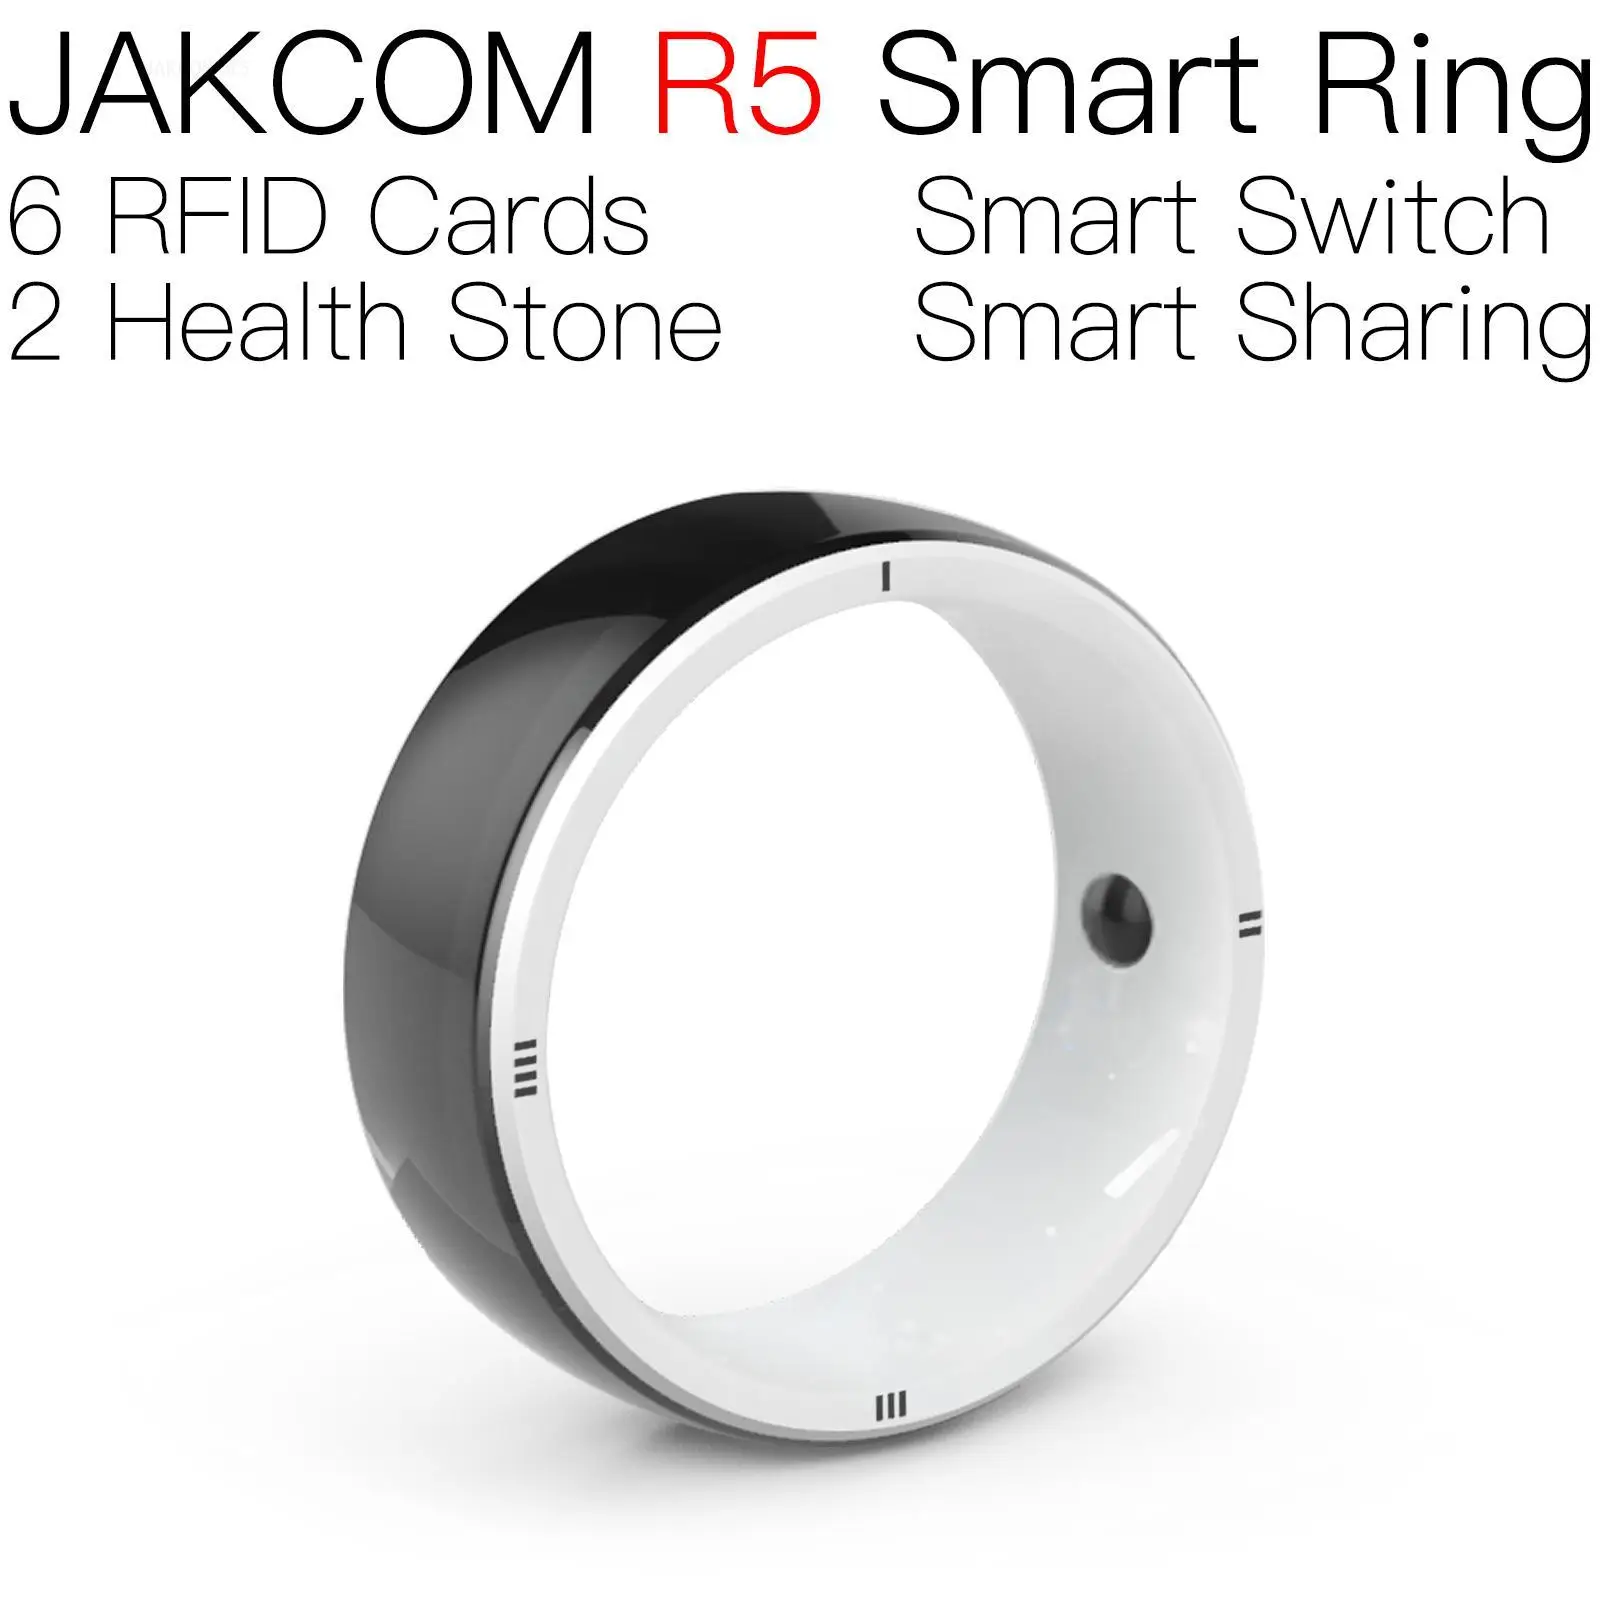 

Умное кольцо JAKCOM R5, лучше, чем ls5000, ручной rfid-идентификатор, Бамбуковая карта, чтение, записи, считывание, только кожа, 125 паве